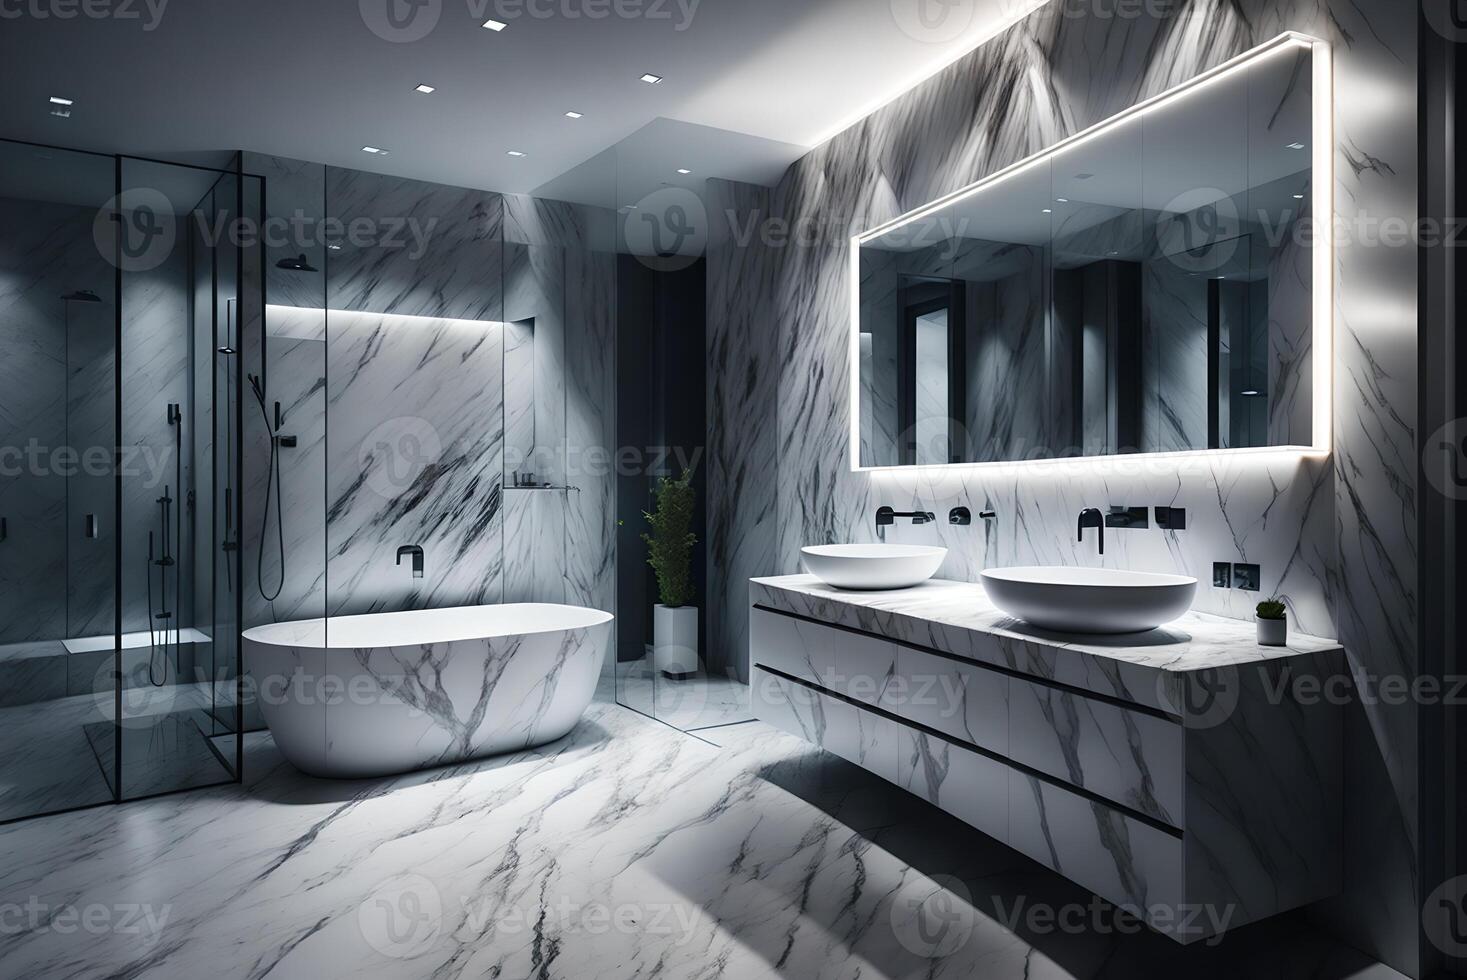 sleek grey marble bathroom with LED lighting, double vanity, and freestanding tub, photo